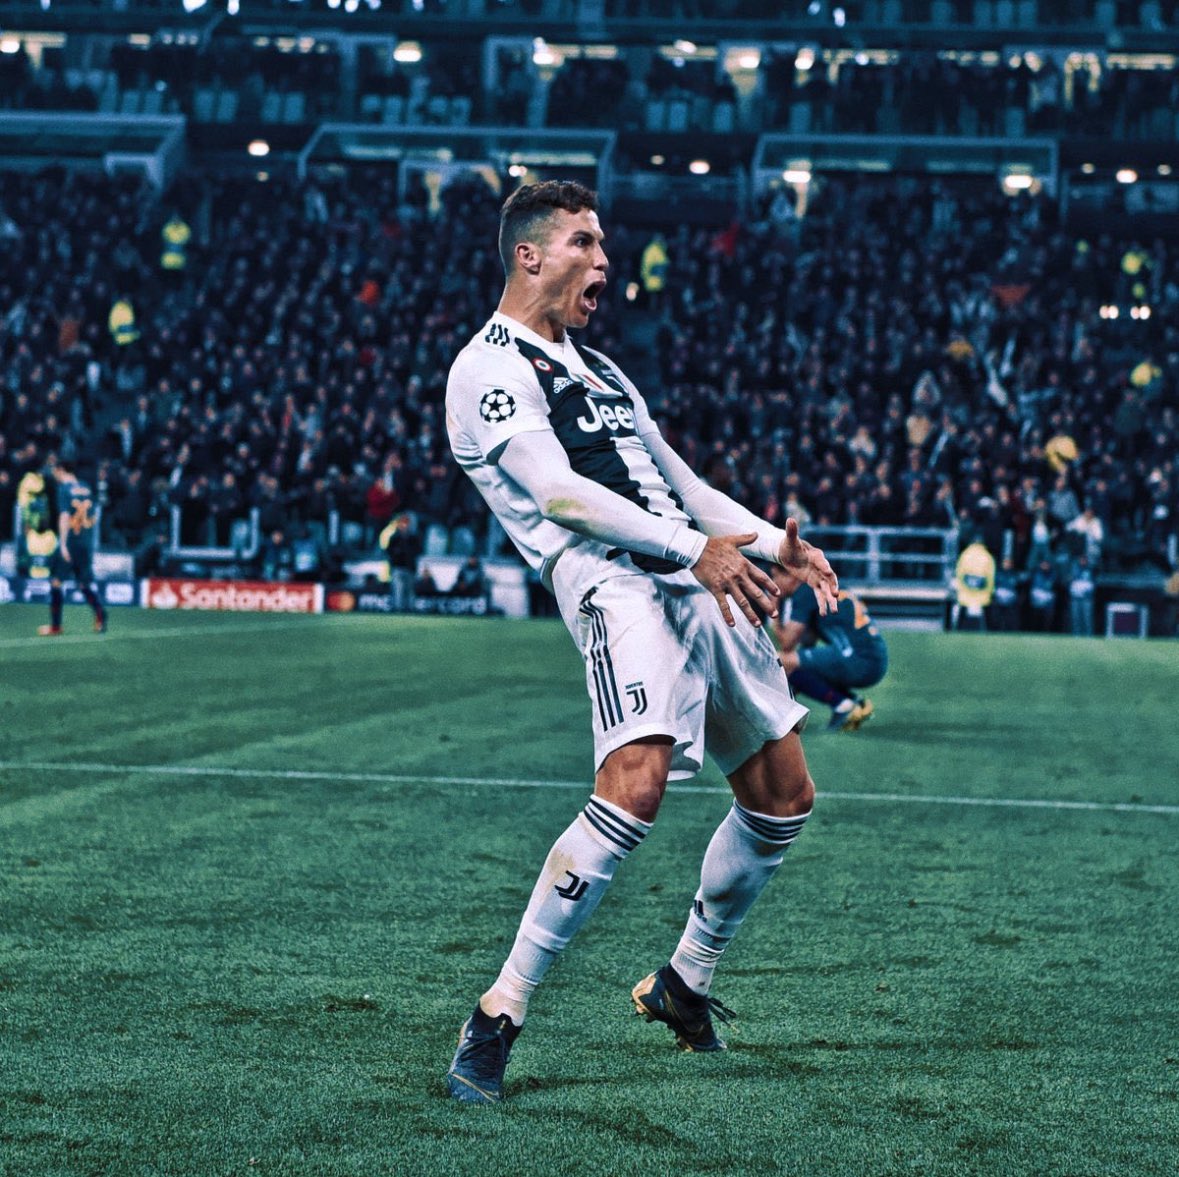 Cristiano Ronaldo's 𝑪𝑳𝑼𝑻𝑪𝑯 𝑴𝑶𝑴𝑬𝑵𝑻𝑺 A Thread: